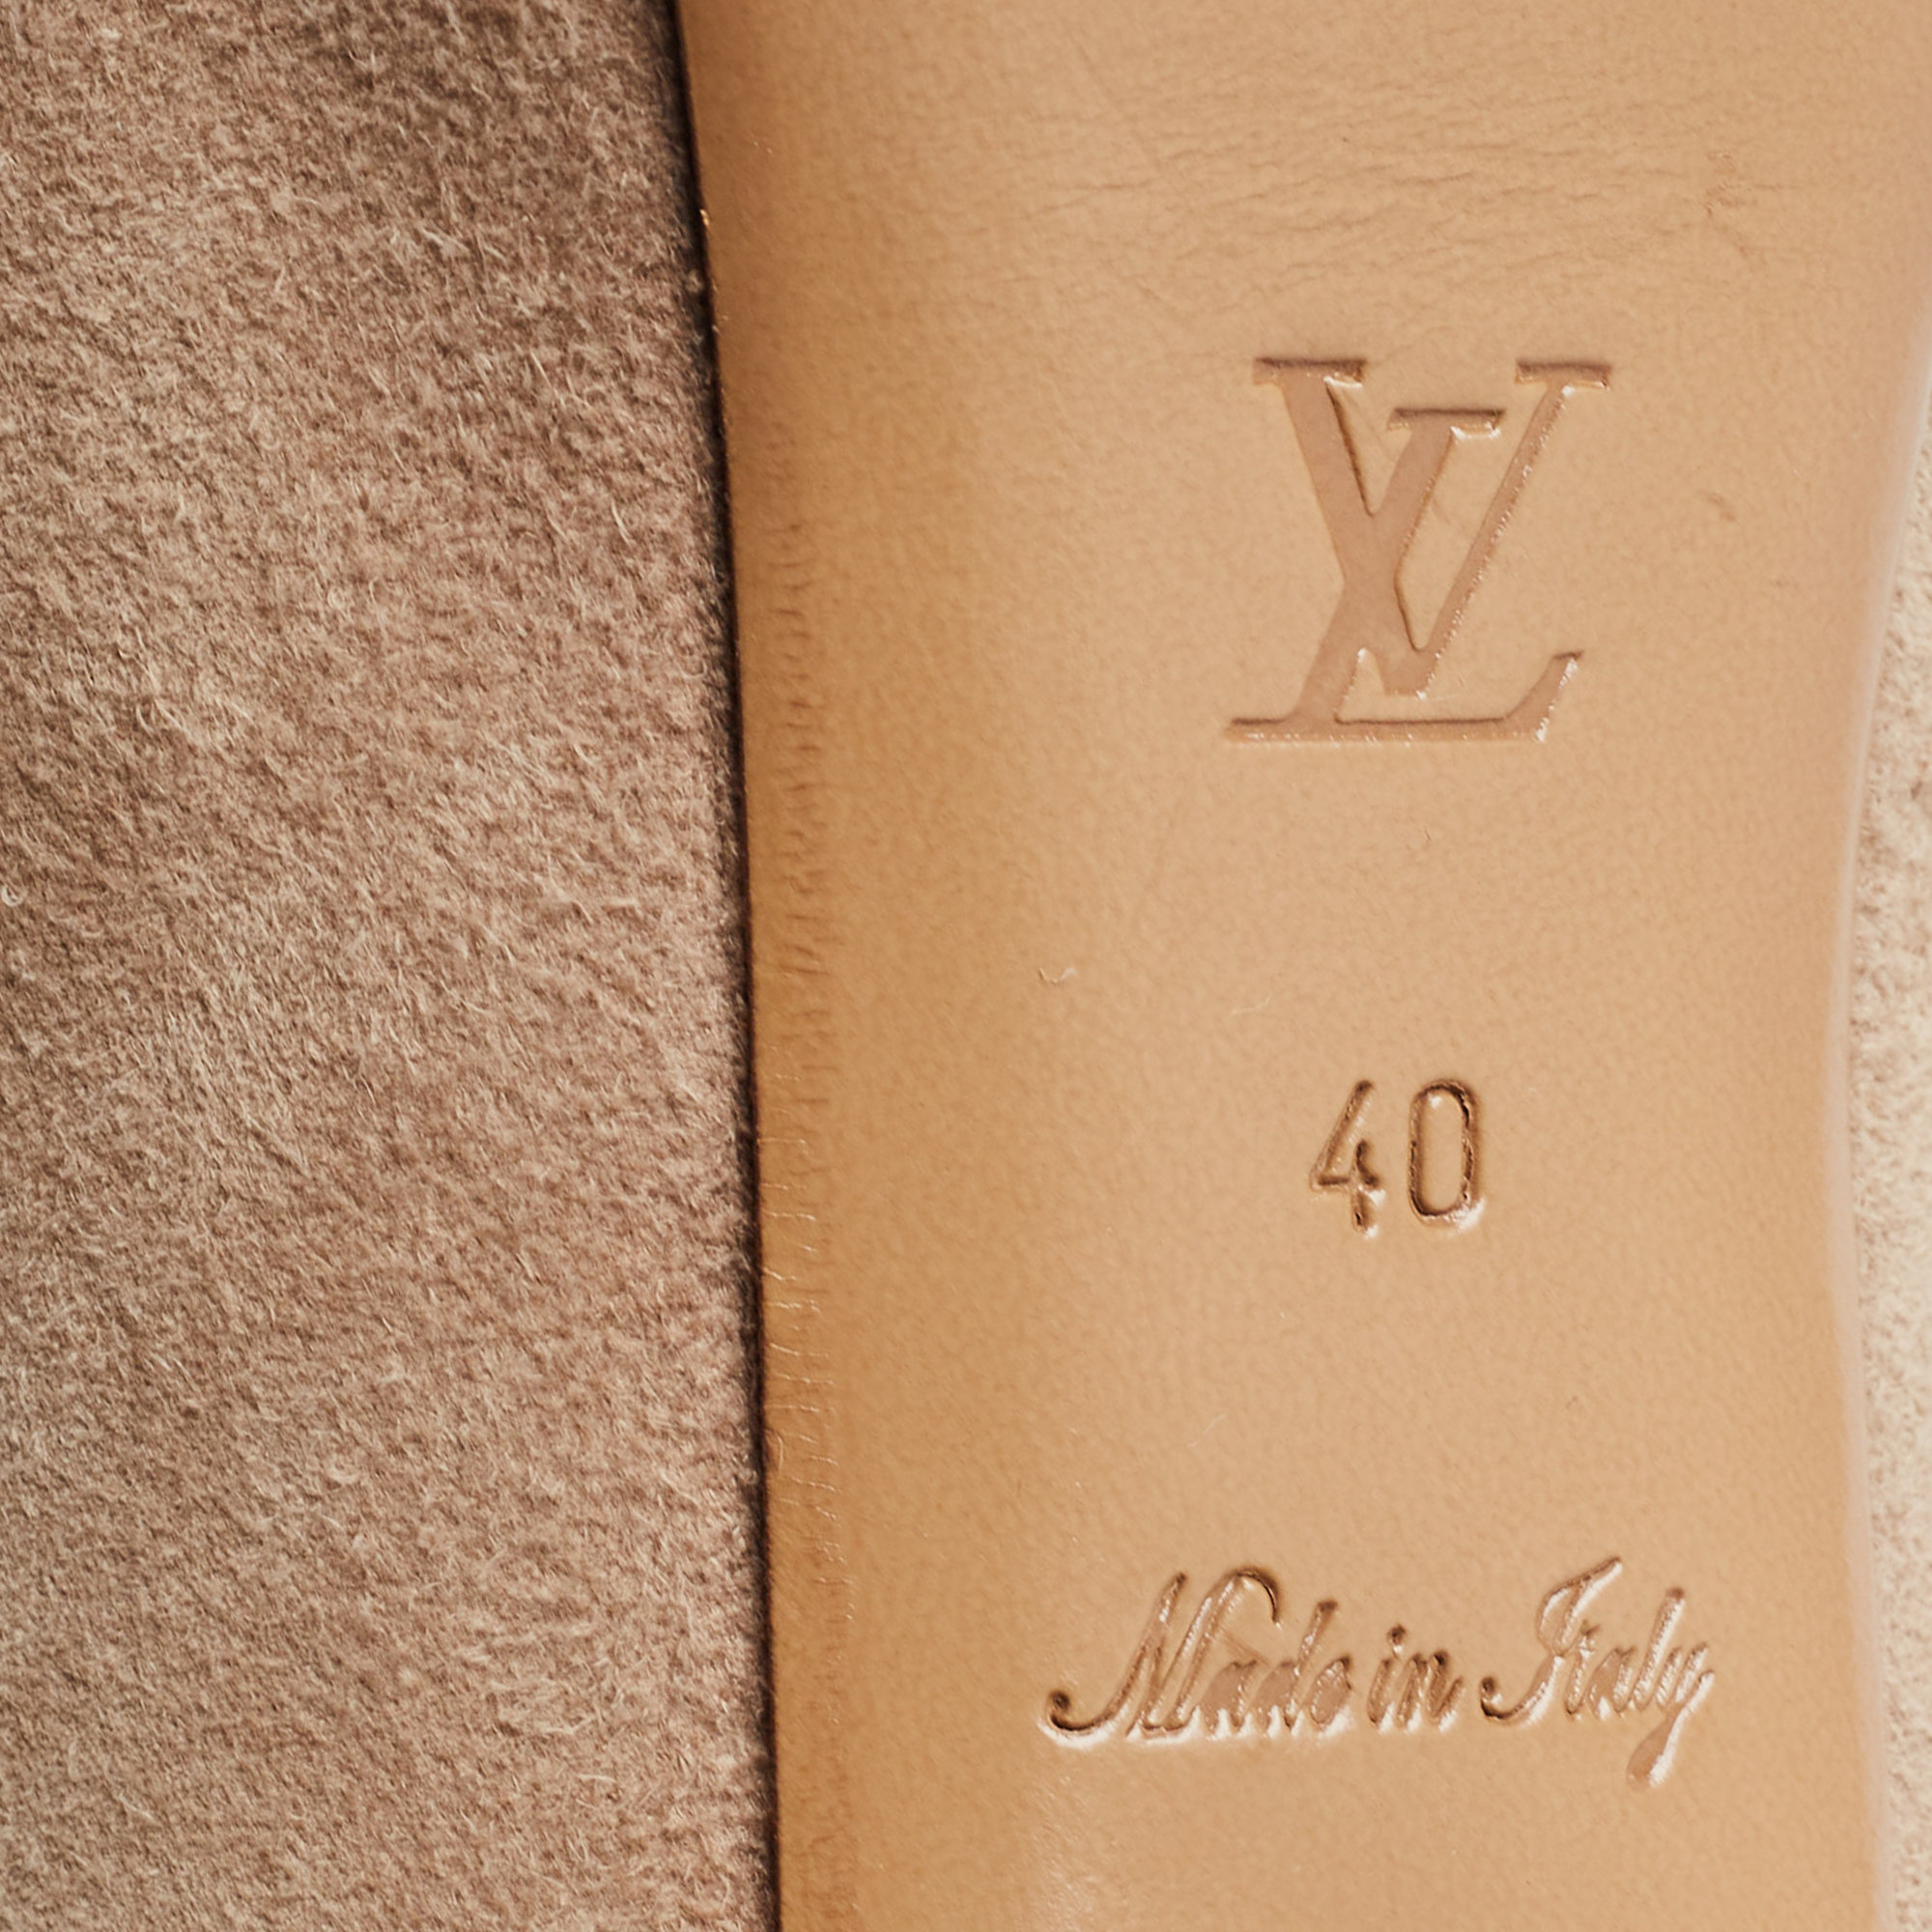 Louis Vuitton Beige Suede Criss Cross Peep Toe Platform Pumps Size 40